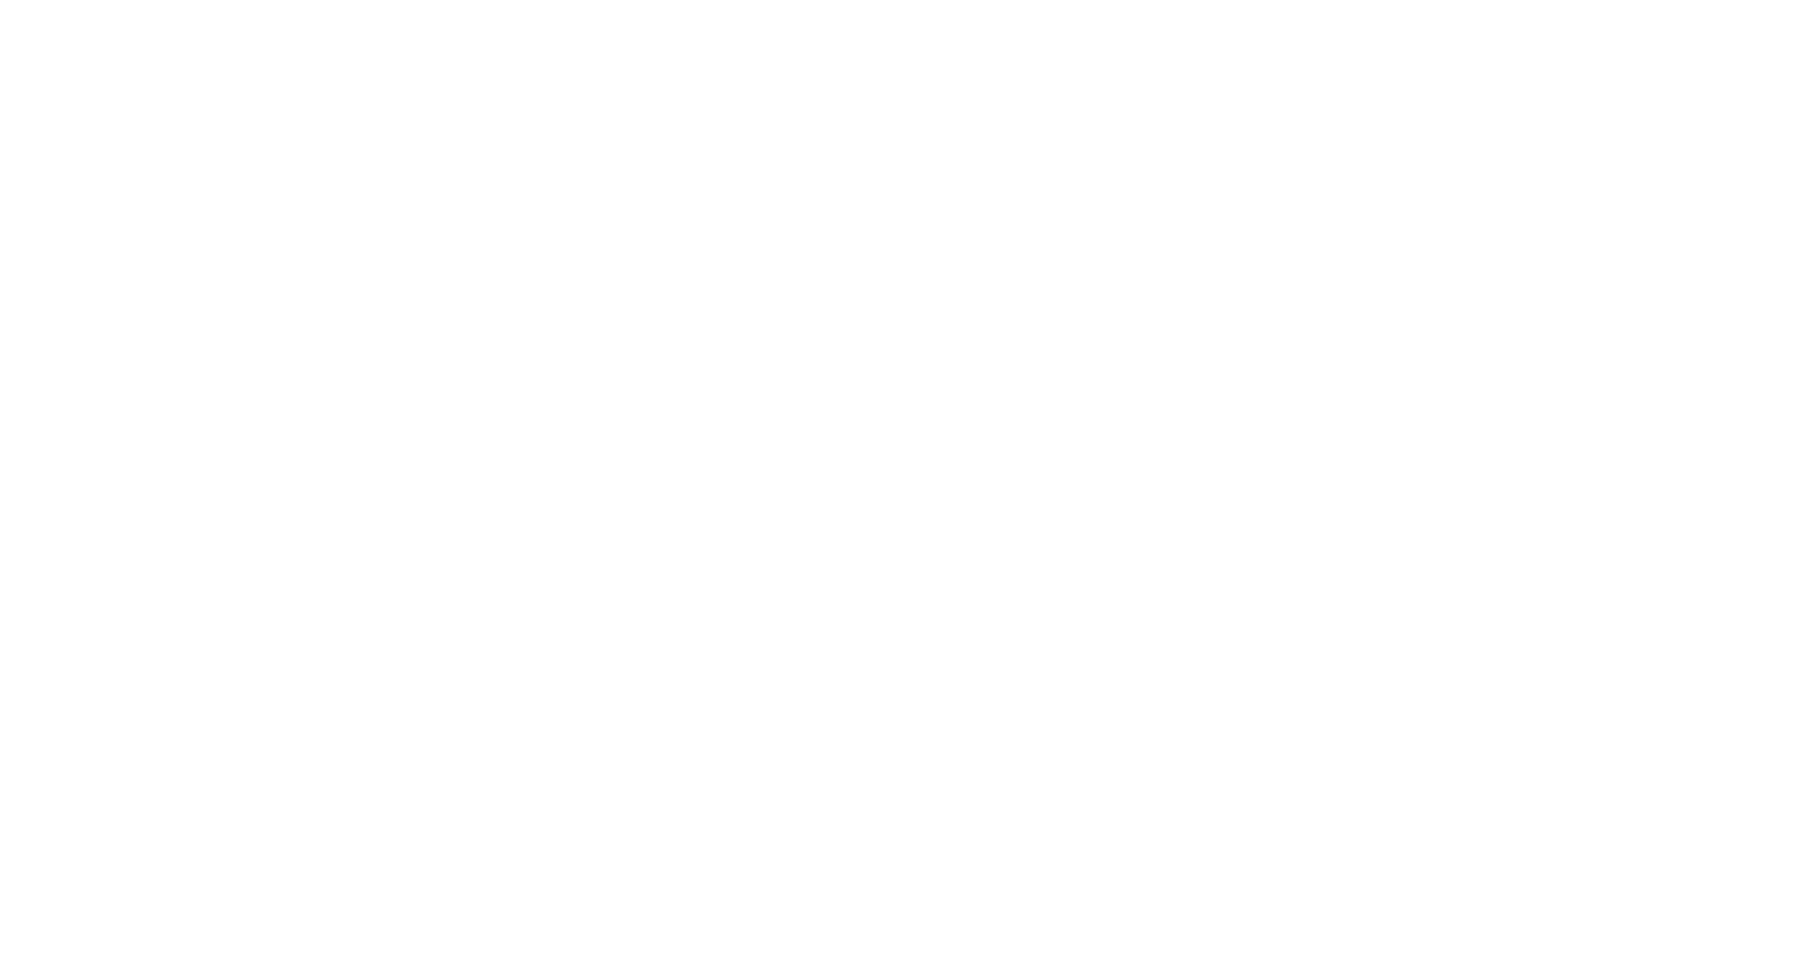 FONTANA MILANO 1915